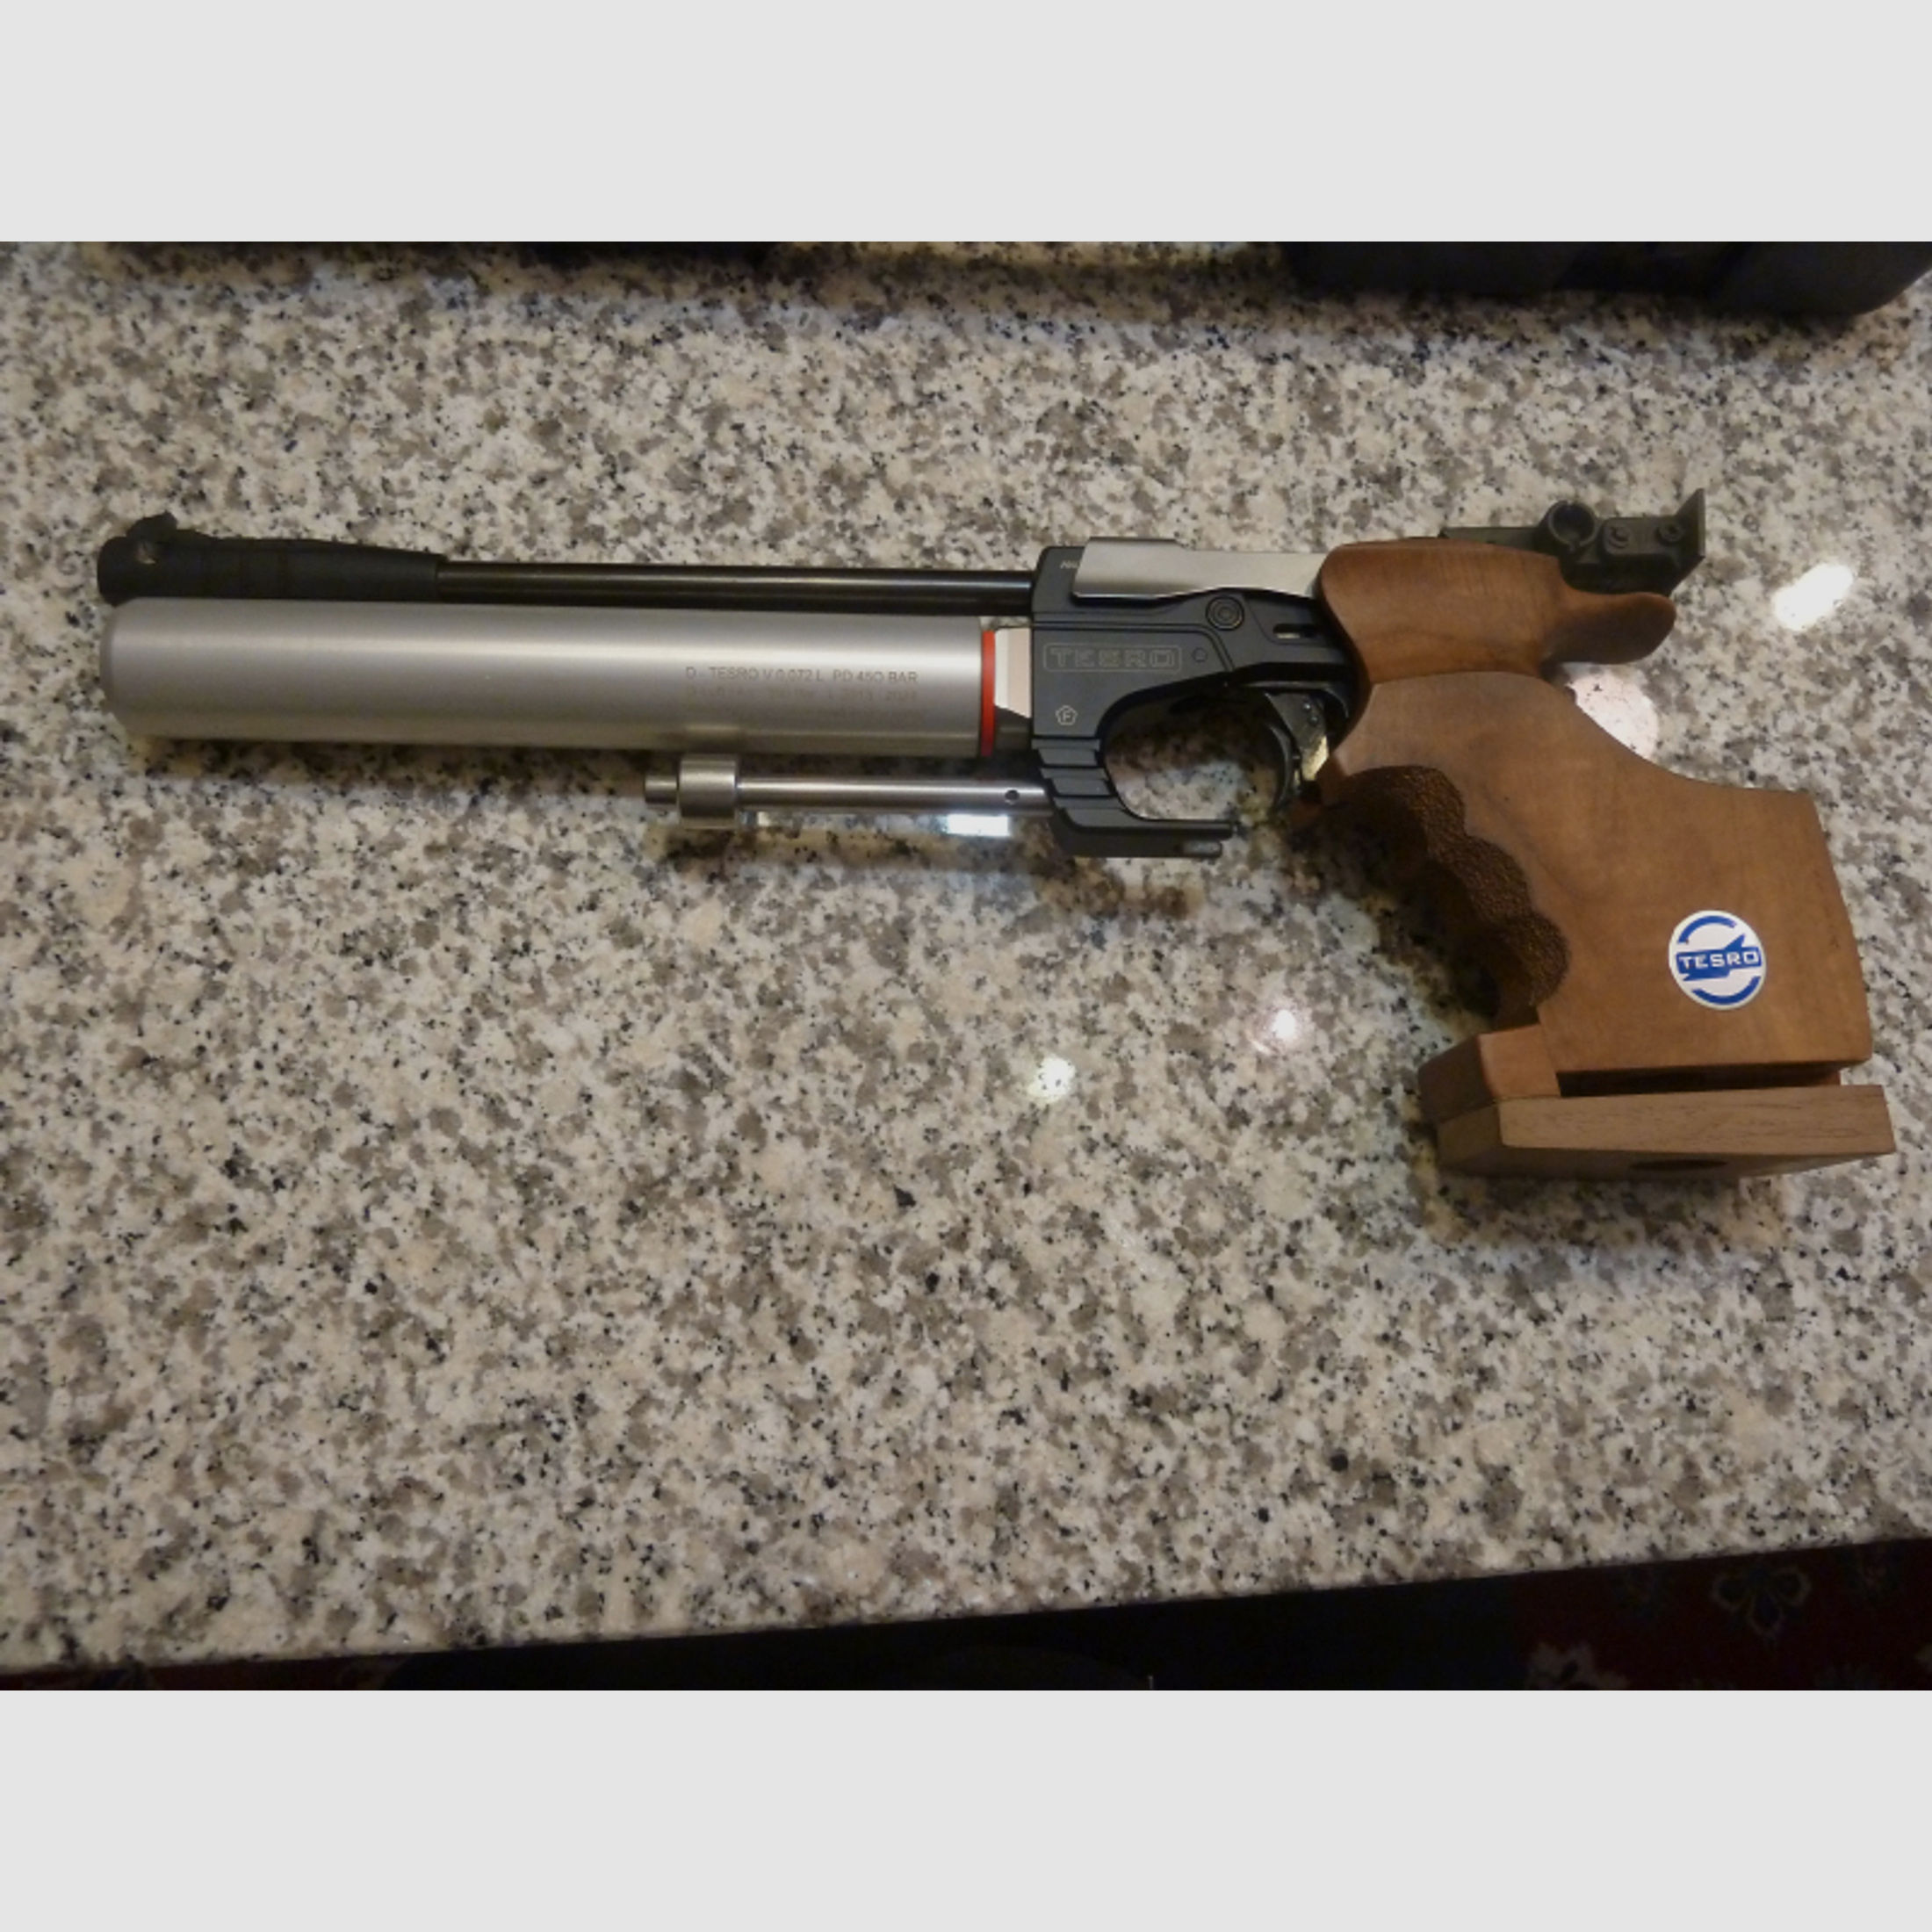 CO2-Luftpistole Tesro PA1 mit Koffer und Zubehör, 4,5mm Diabolo